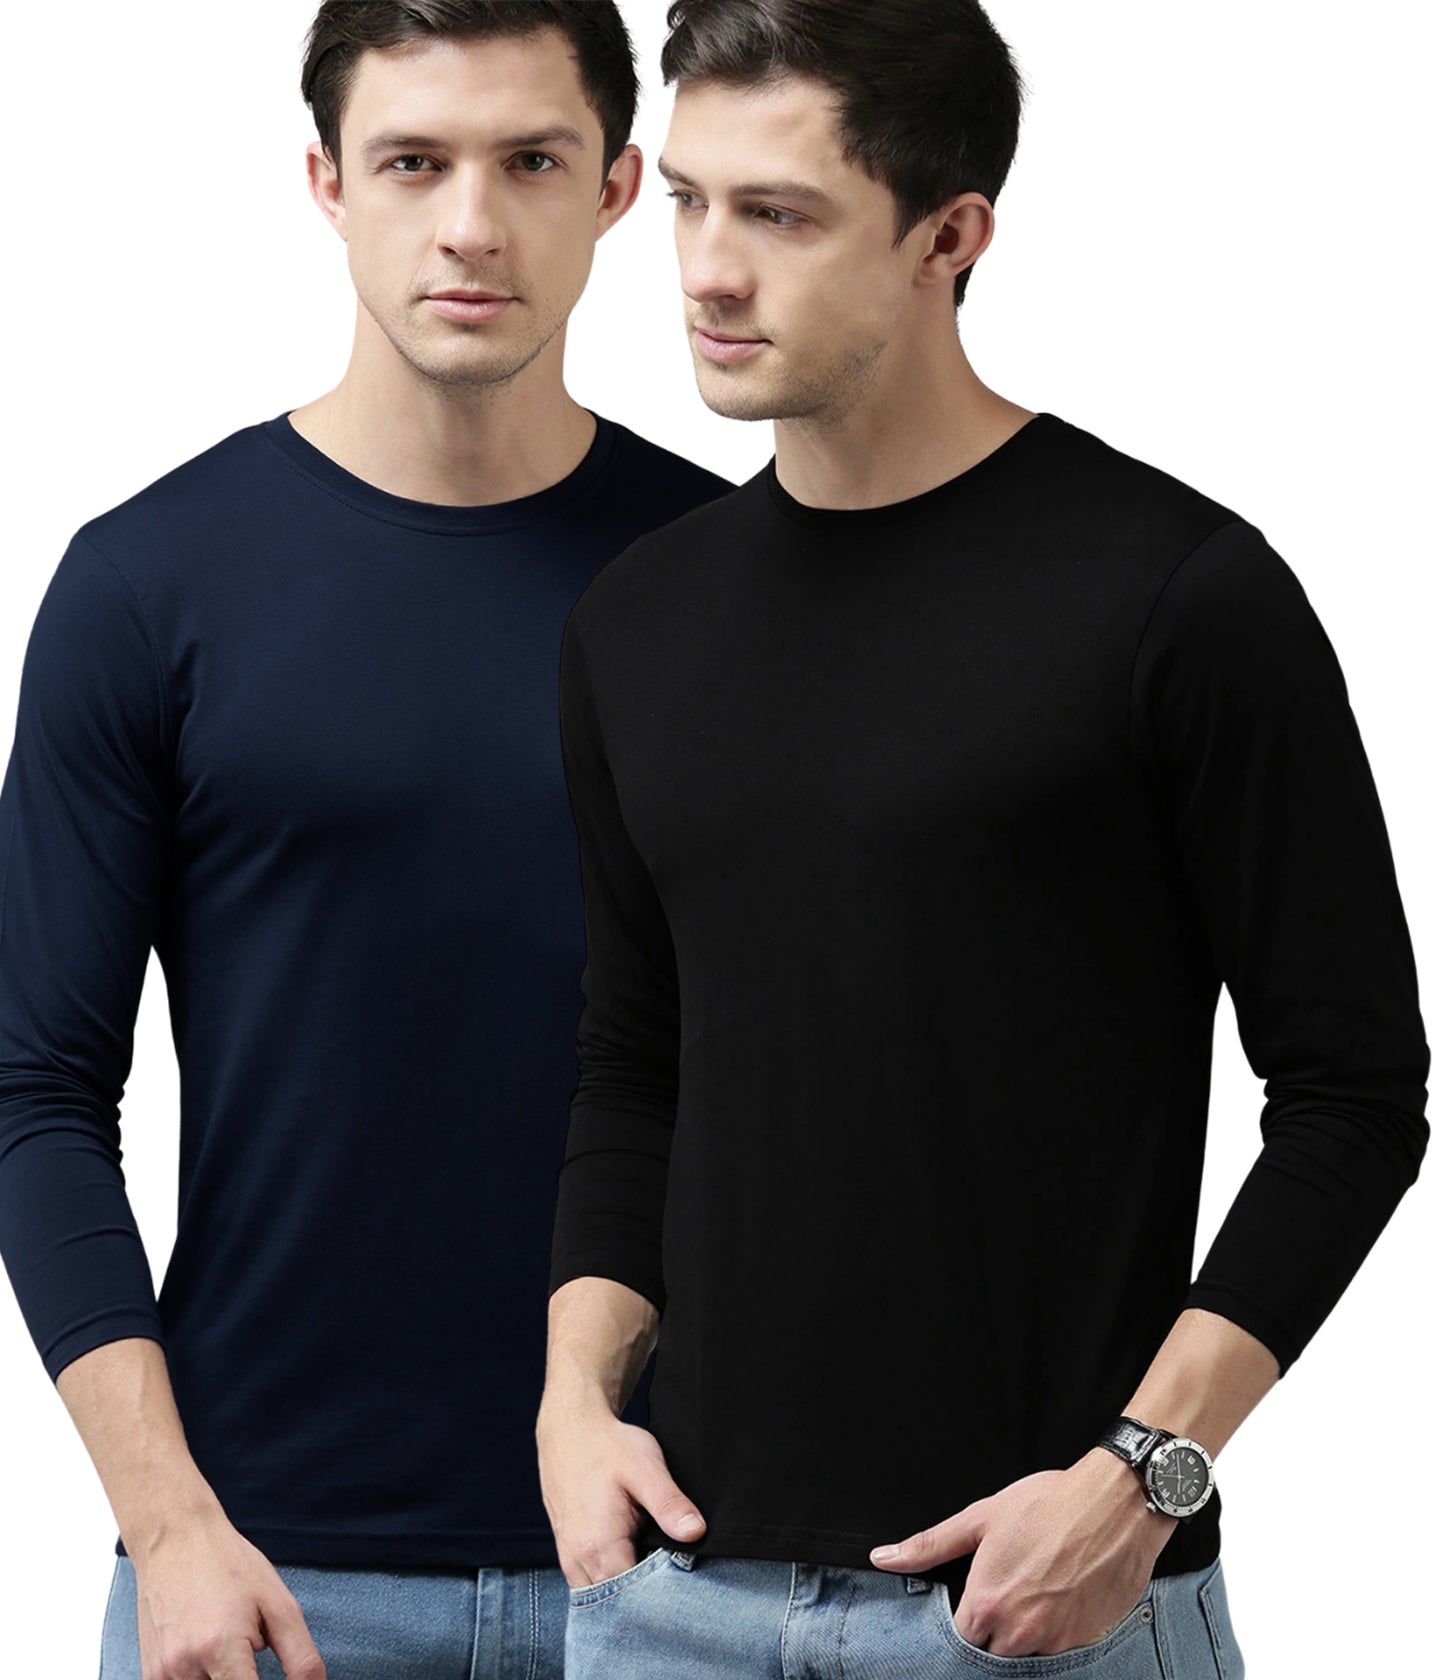 Full Sleeve T-Shirt Manufacturer-Tirupur-Cotton Long T-Shirt Supplier UAE